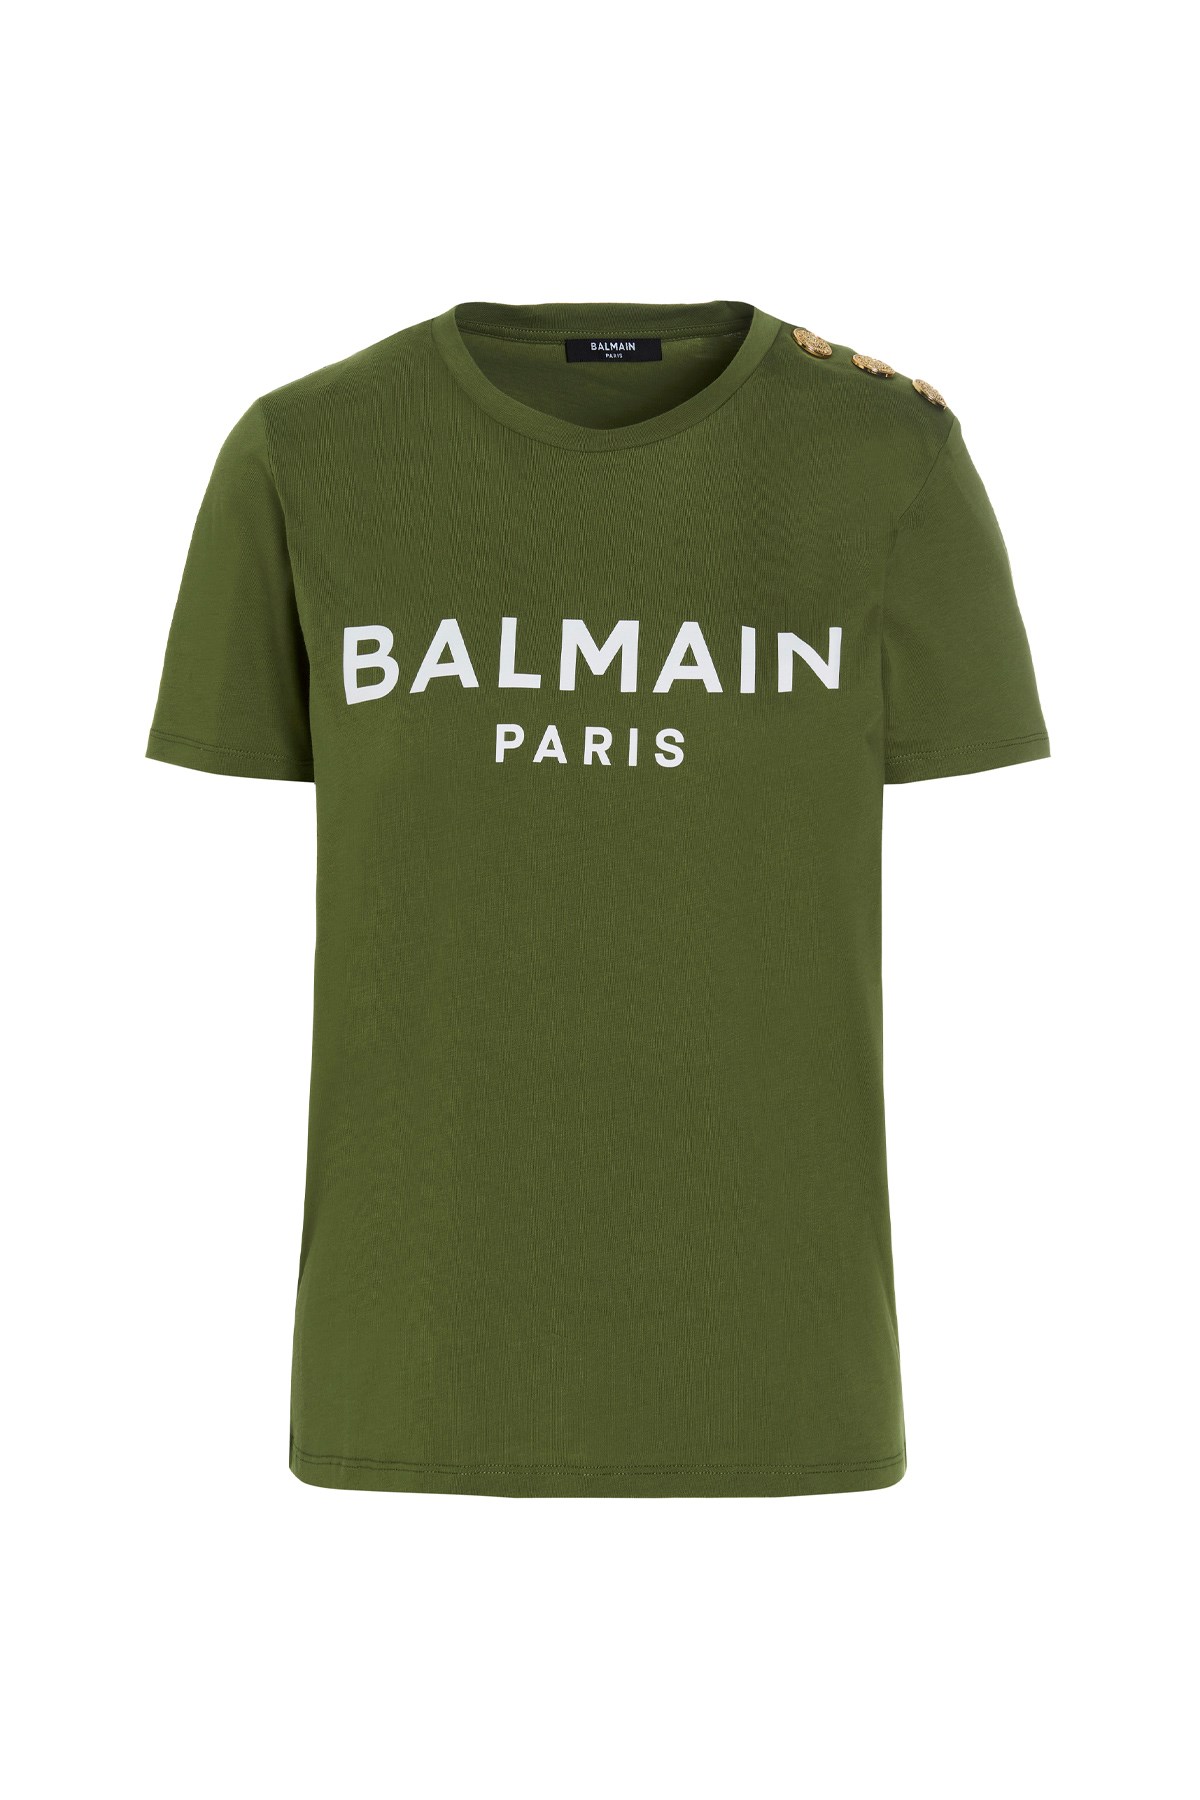 BALMAIN T-Shirt Mit Logo Und Goldenen Zierknöpfen